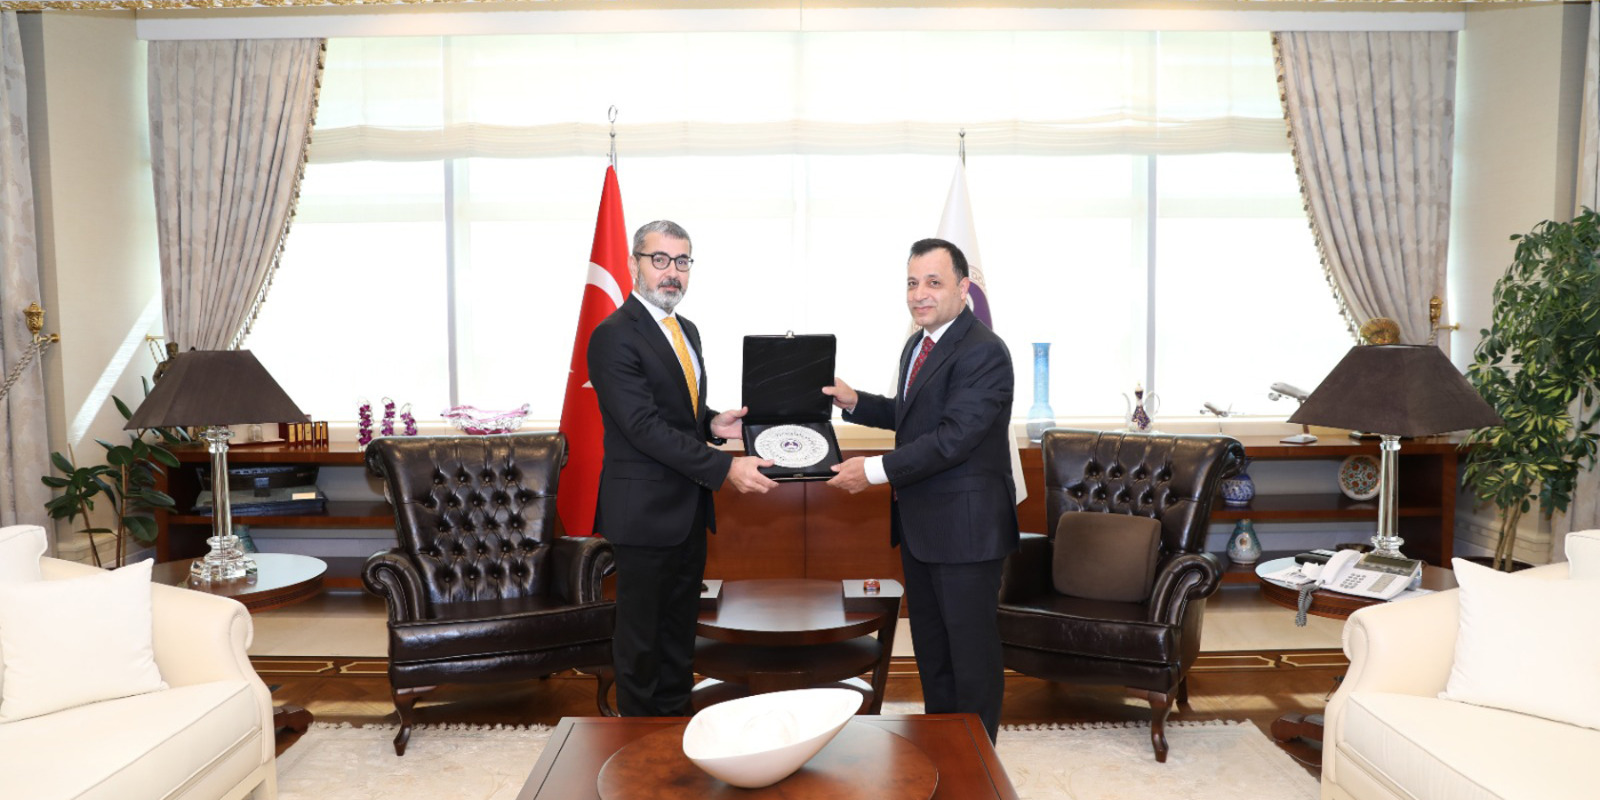 Başkanımız Prof. Dr. Muharrem Kılıç, Anayasa Mahkemesi Başkanı Prof. Dr. Zühtü Arslan’ı Ziyaret Etti